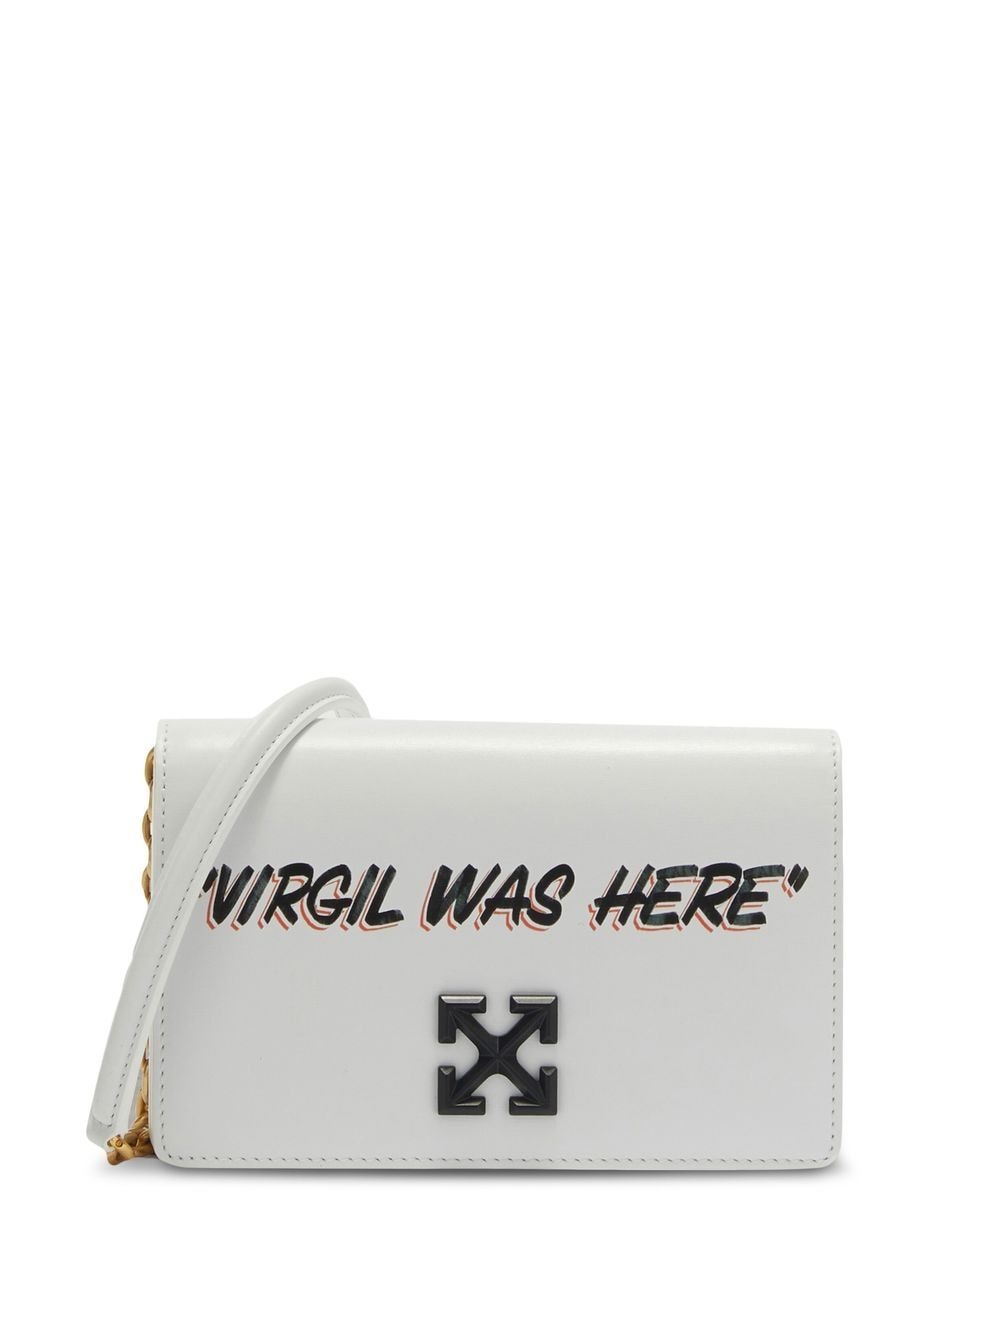 OFF WHITE Calfskin Jitney 0.5 Virgil Was Here Crossbody Bag White